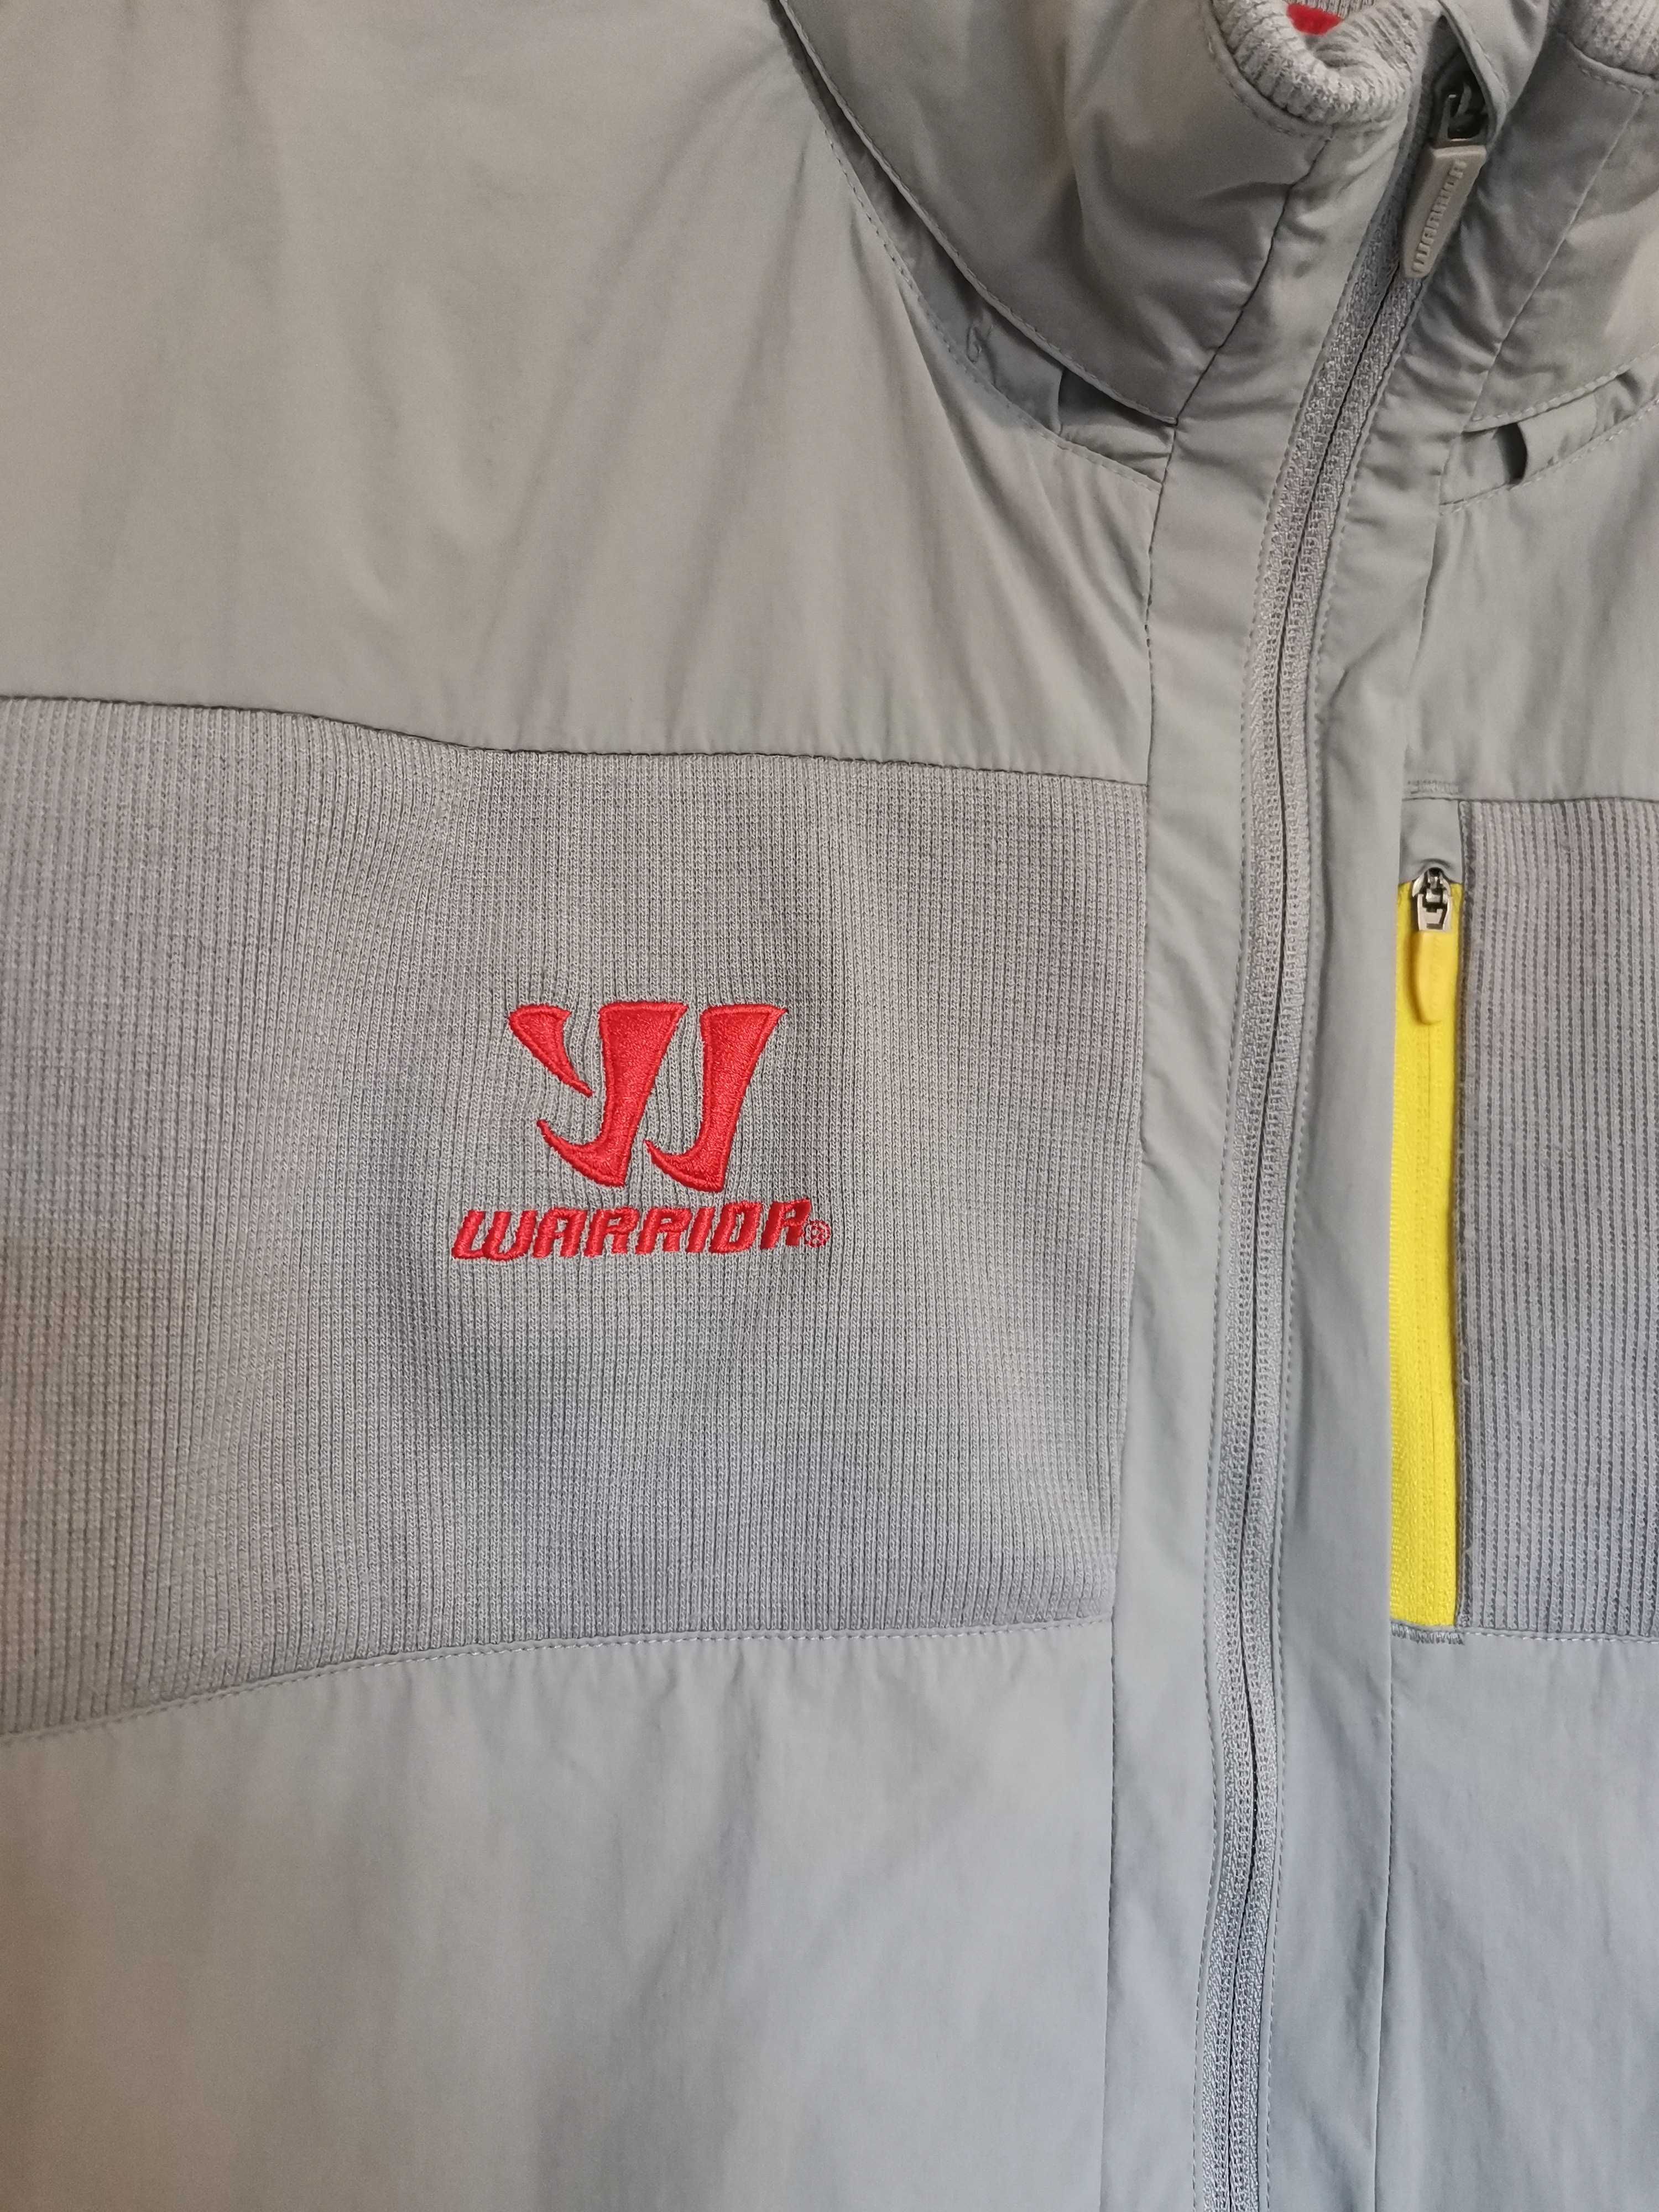 LIVERPOOL RAIN Jacket 2014-2015.